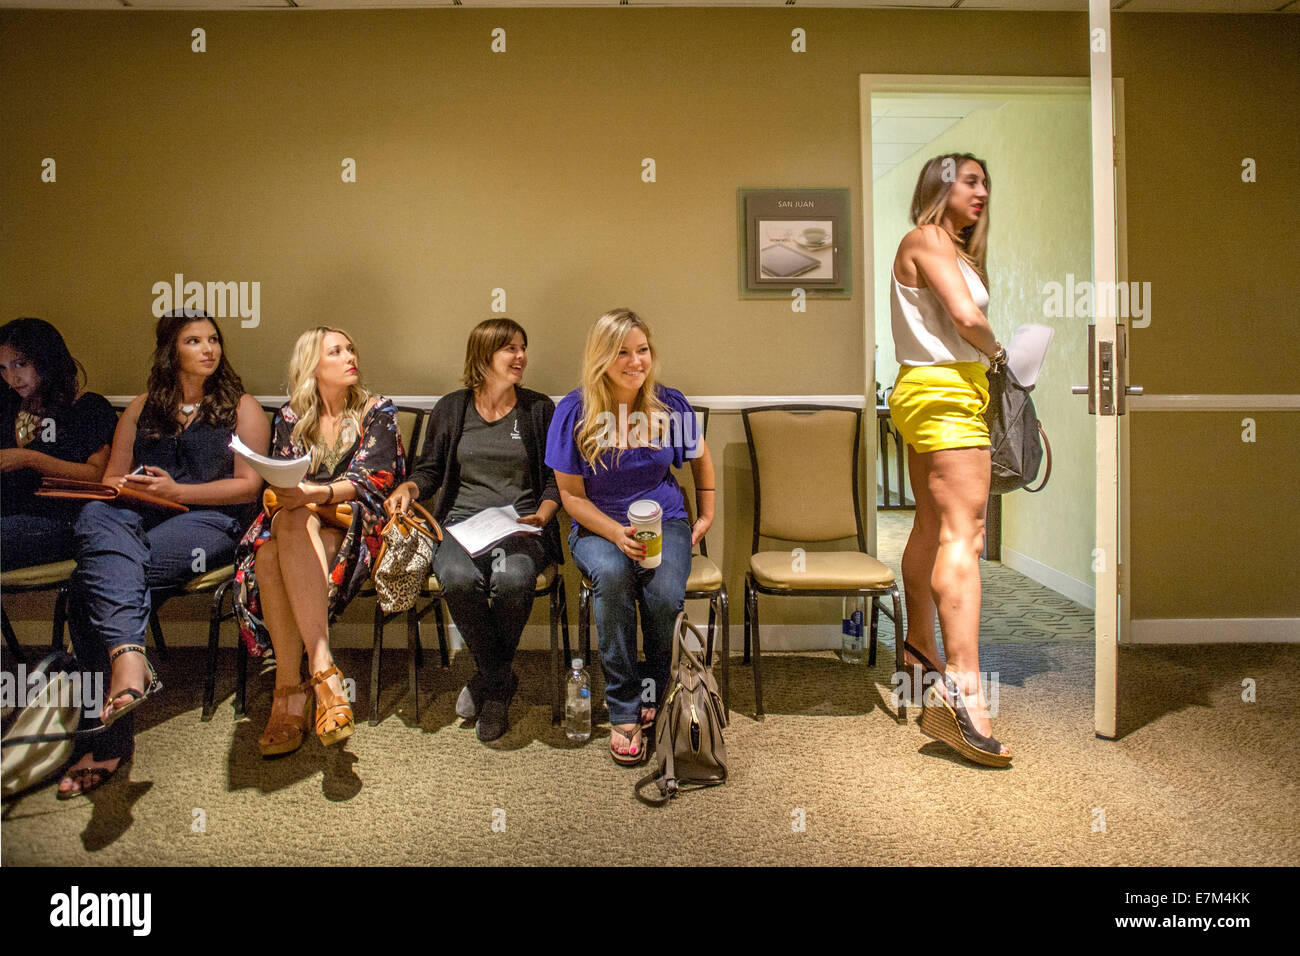 Un grupo de mujeres jóvenes y atractivas en Costa Mesa, California, esperar en un pasillo del hotel, mientras que uno de ellos va a su entrevista en vídeo a una audición para el programa de televisión 'Licenciado'. Foto de stock